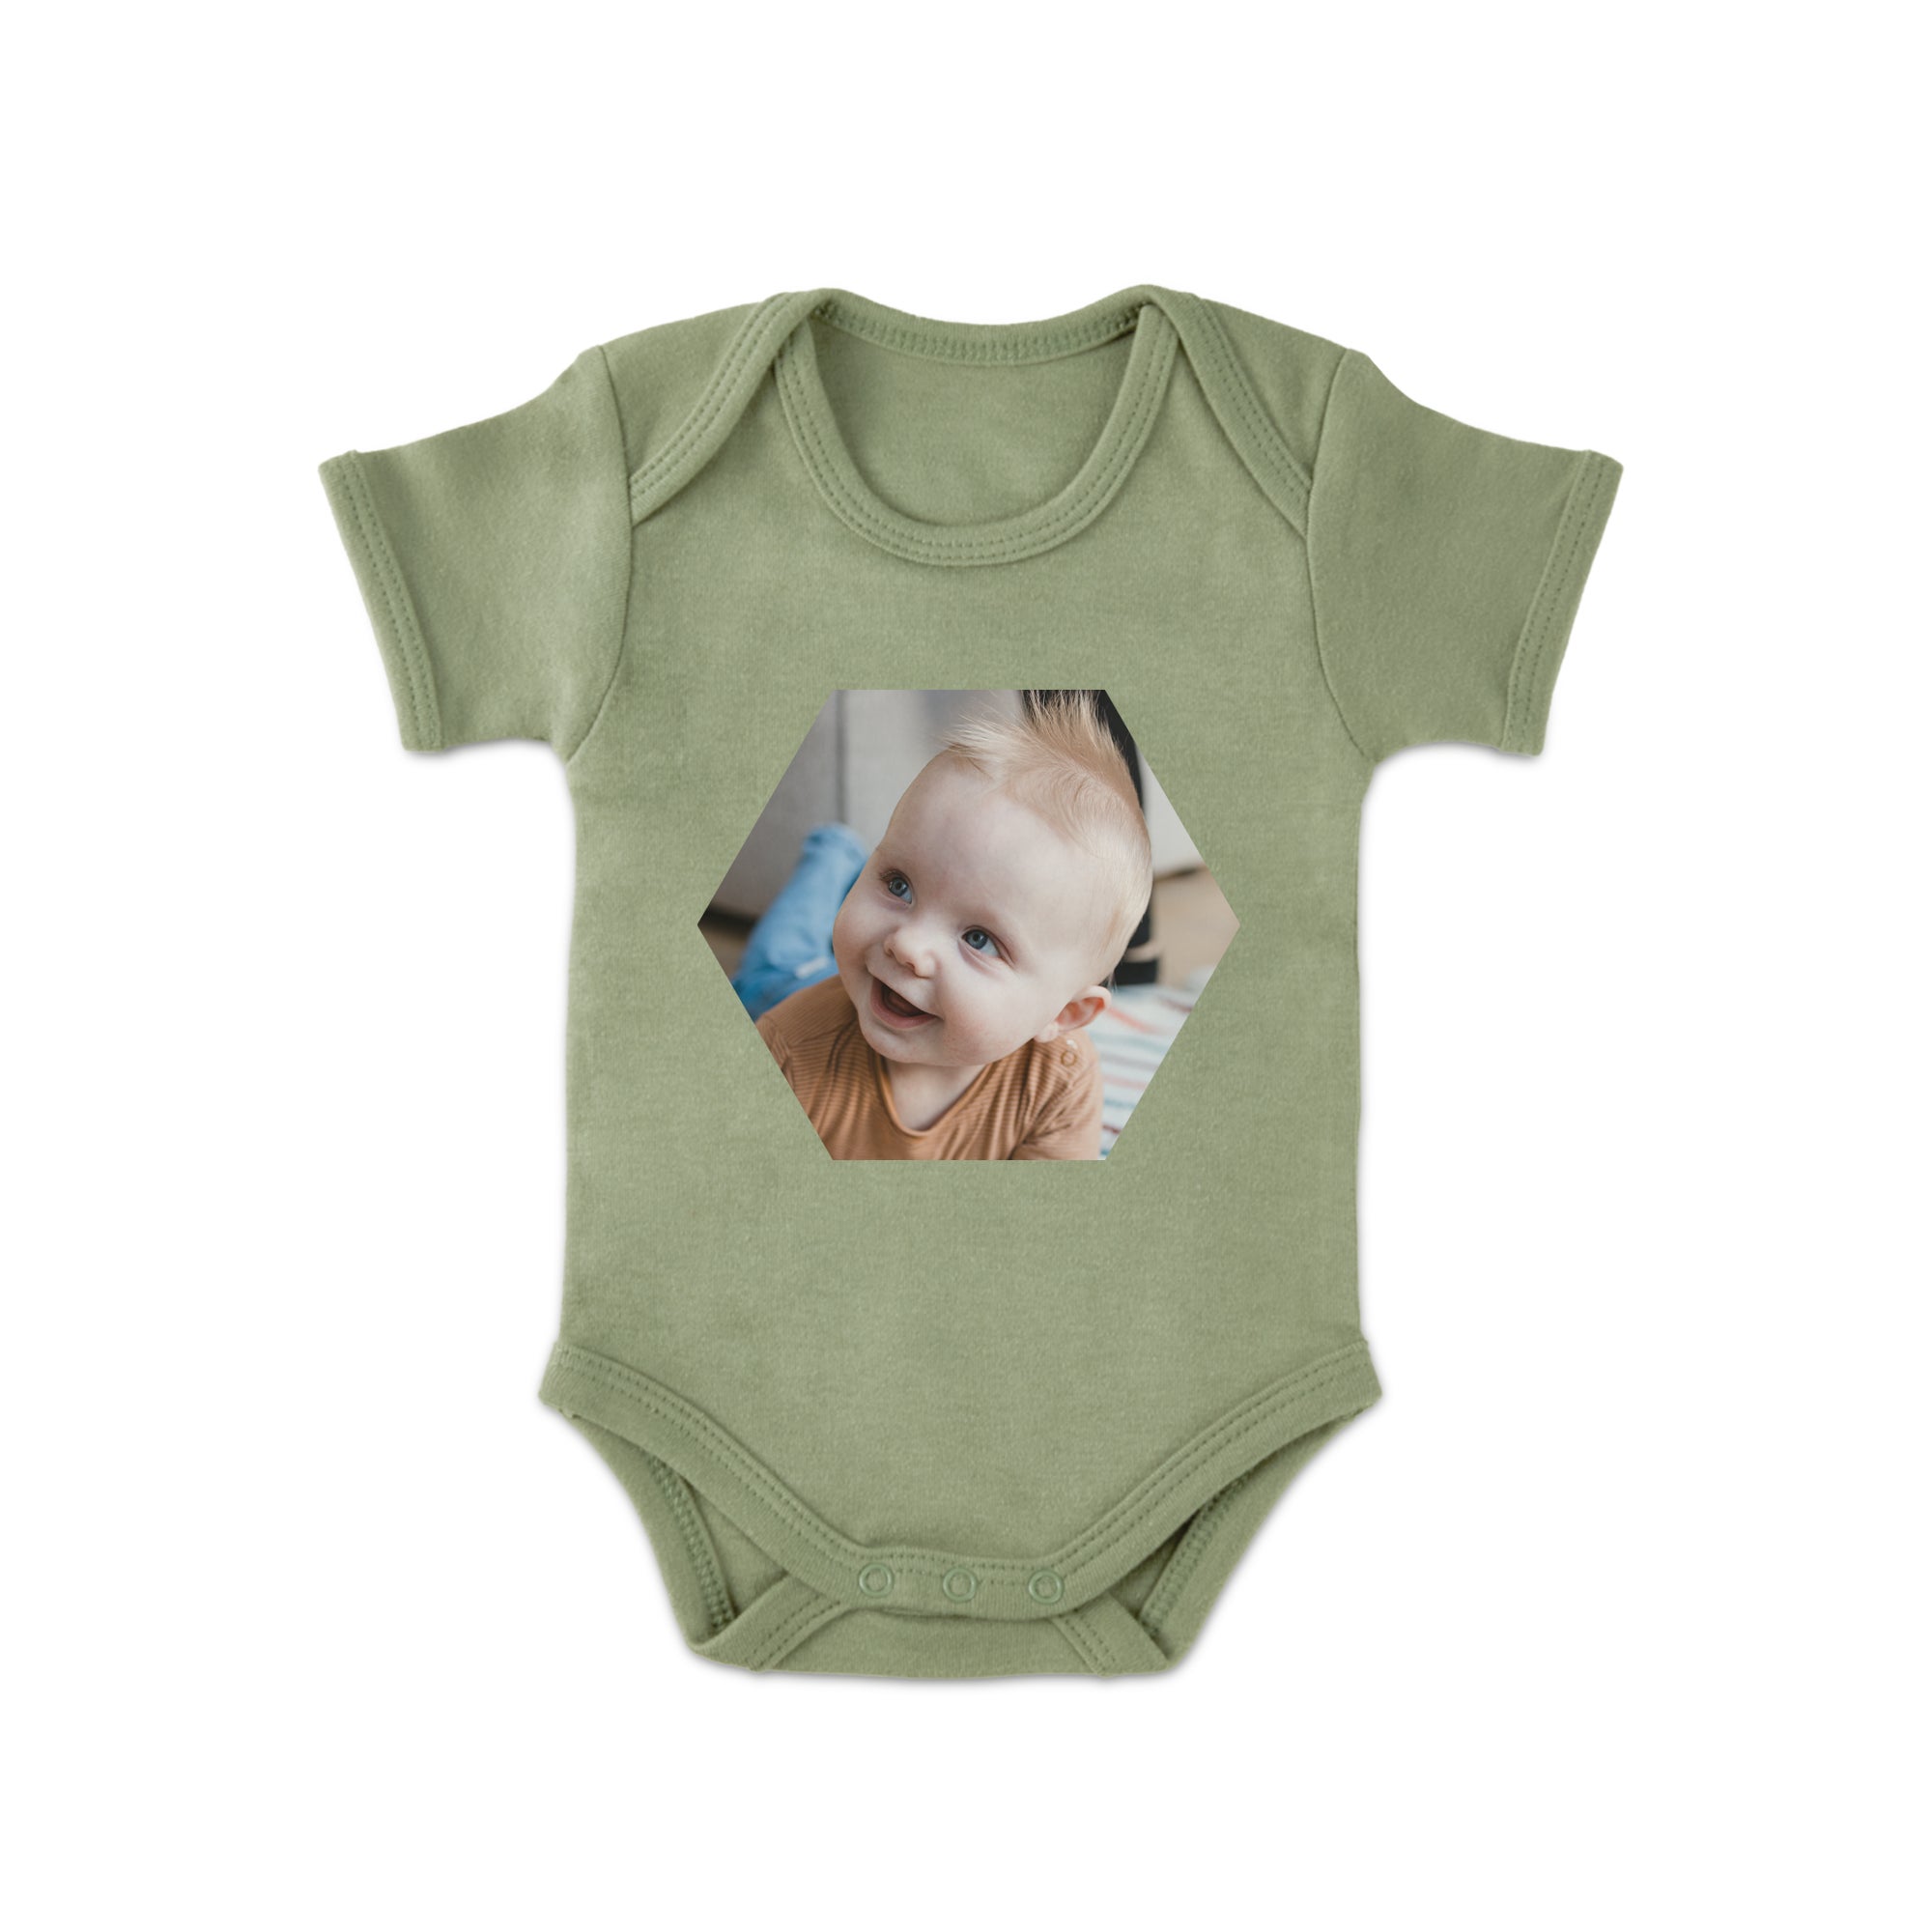 Baby Body selbst gestalten Grün 50 56  - Onlineshop YourSurprise